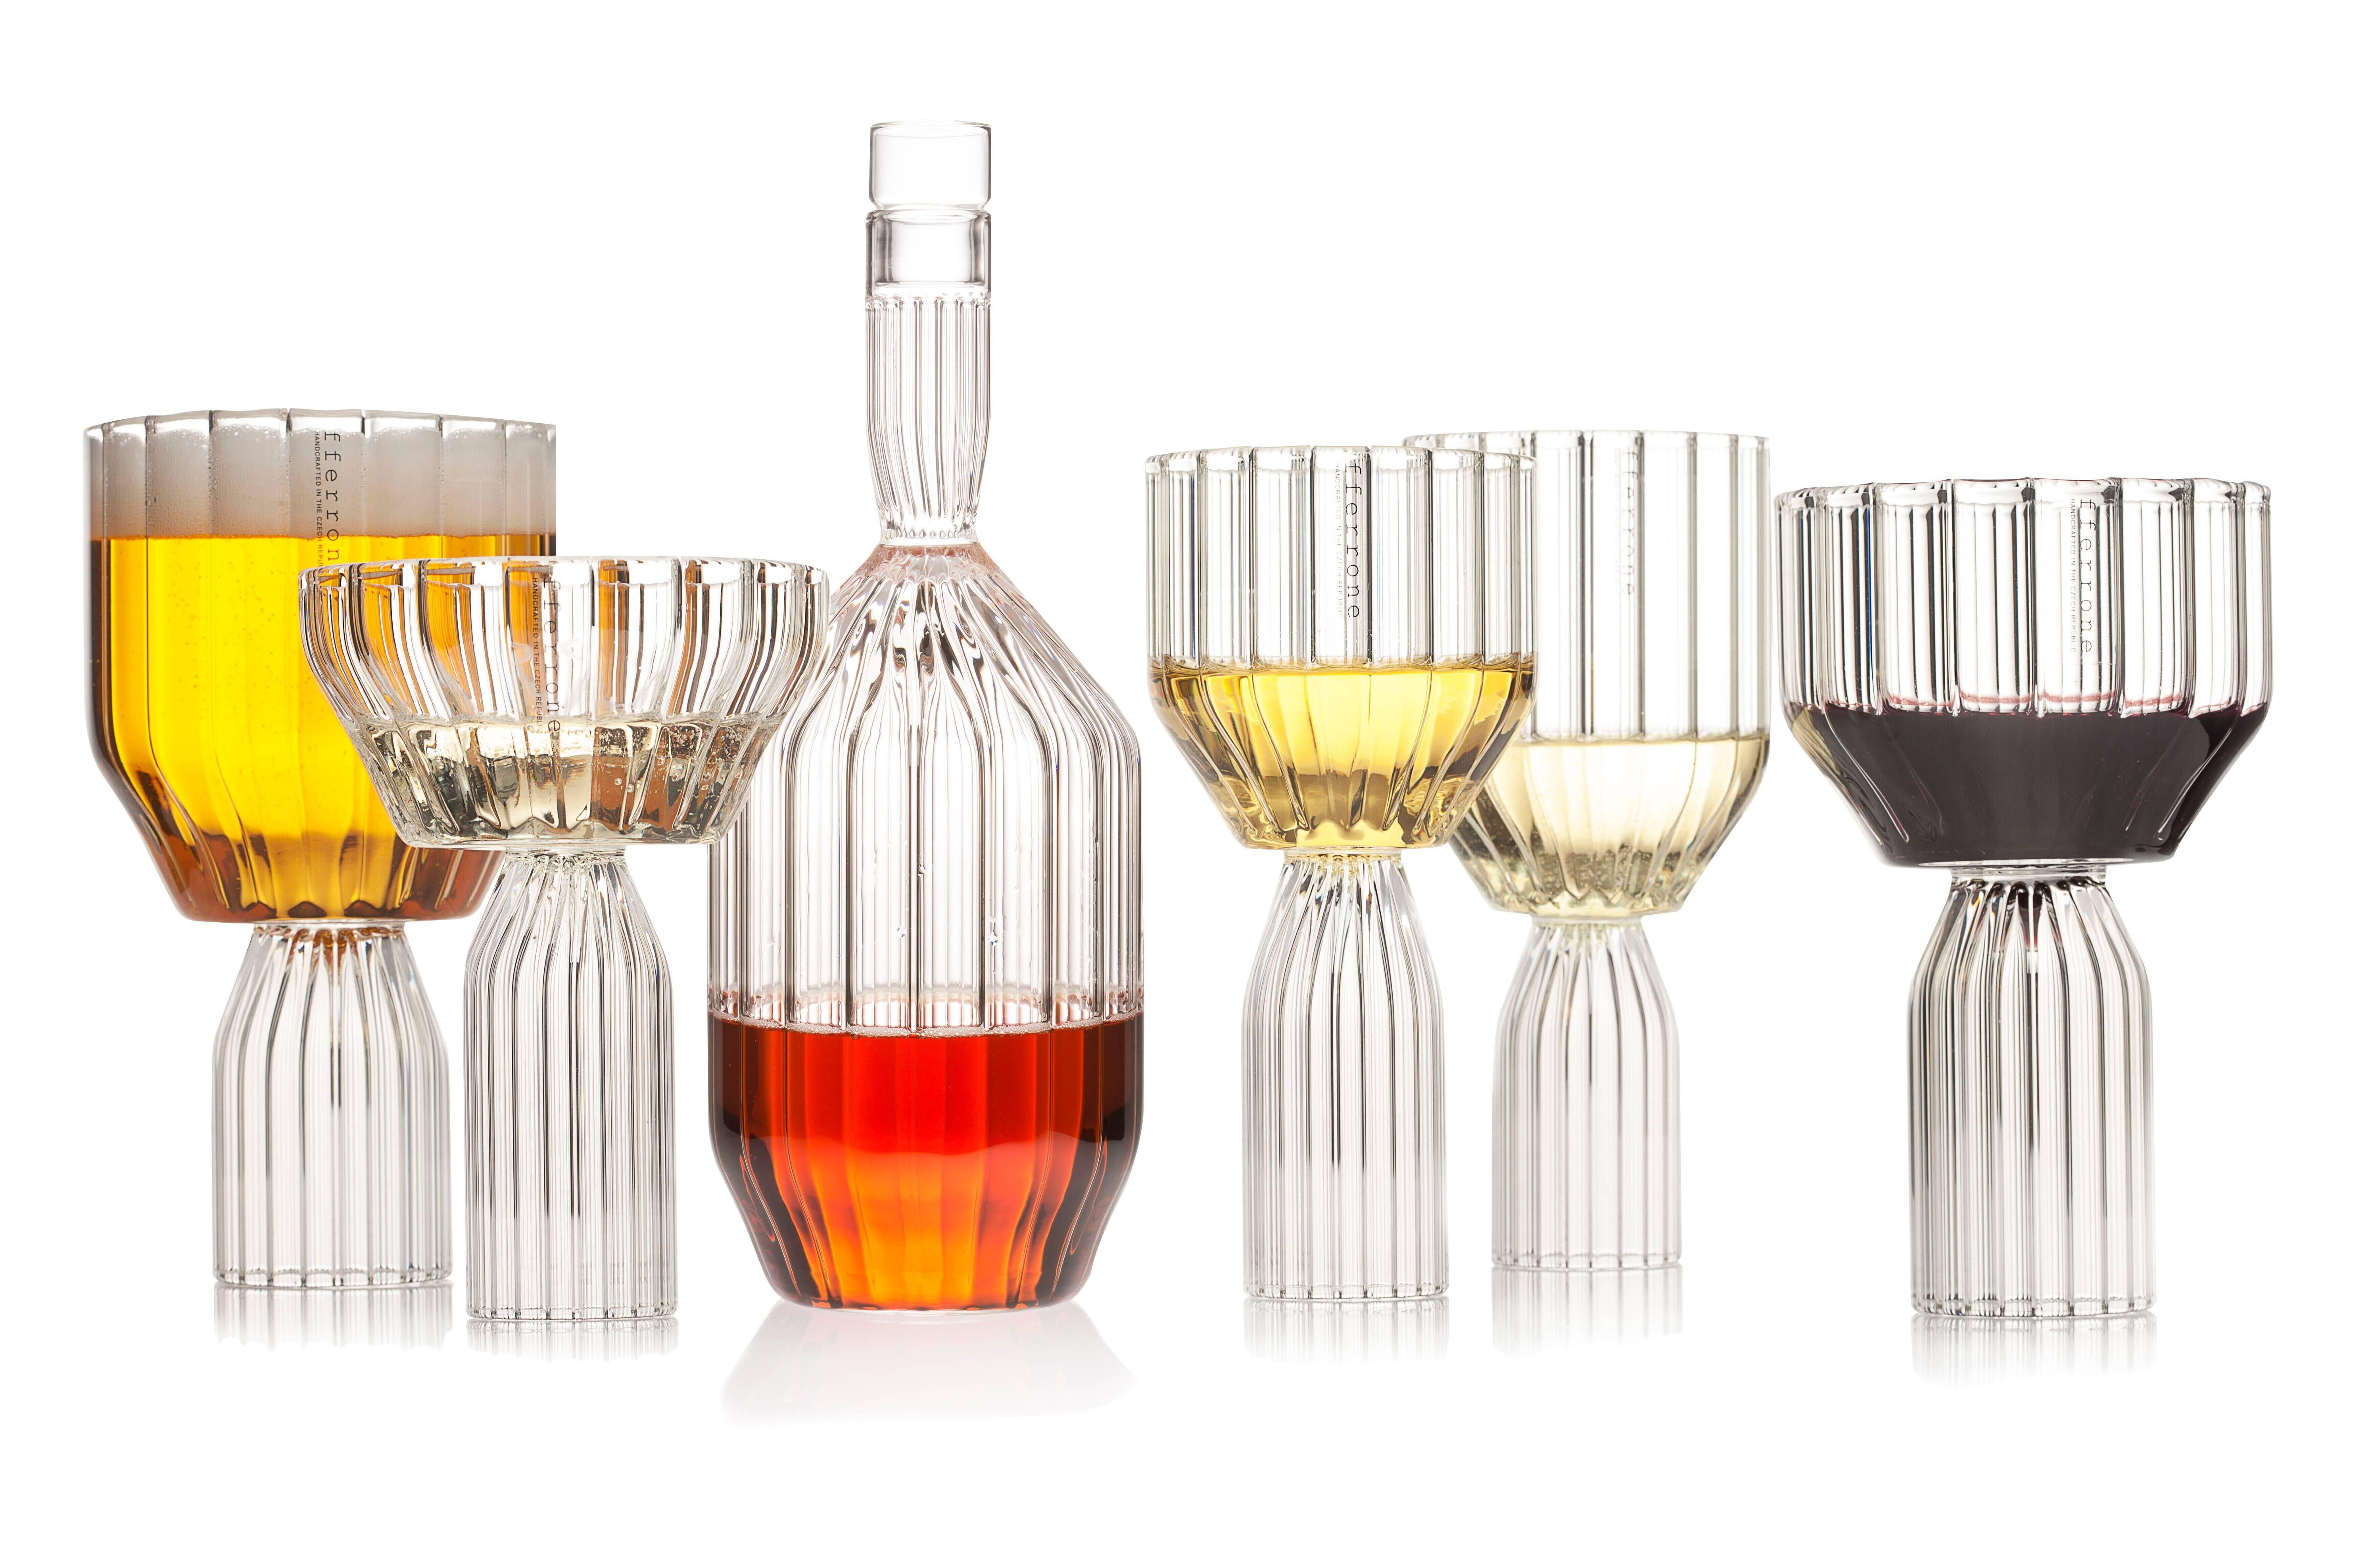 Ein Paar tschechische zeitgenössische Glas handgefertigt ist die perfekte große Kelch Wein oder Cocktail-Glas für Getränke.
Die Kollektion Margot ist eine moderne Interpretation des geschliffenen Glases und kehrt die Tradition mit komplizierten